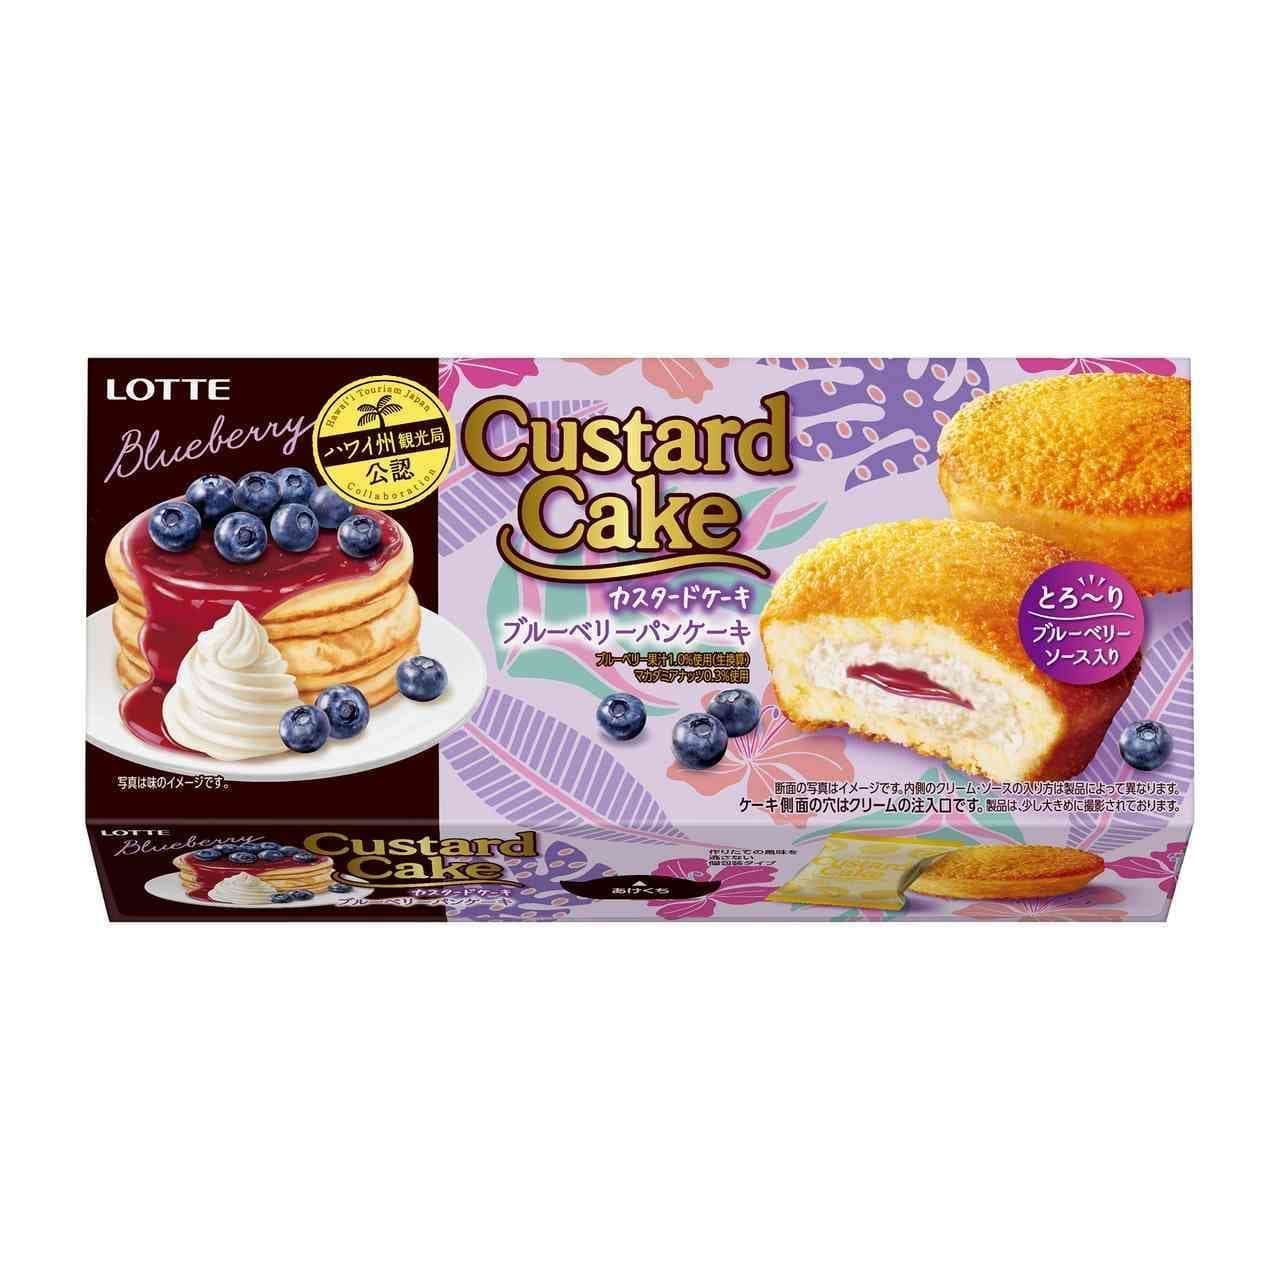 Custard Cake [Blueberry Pancake